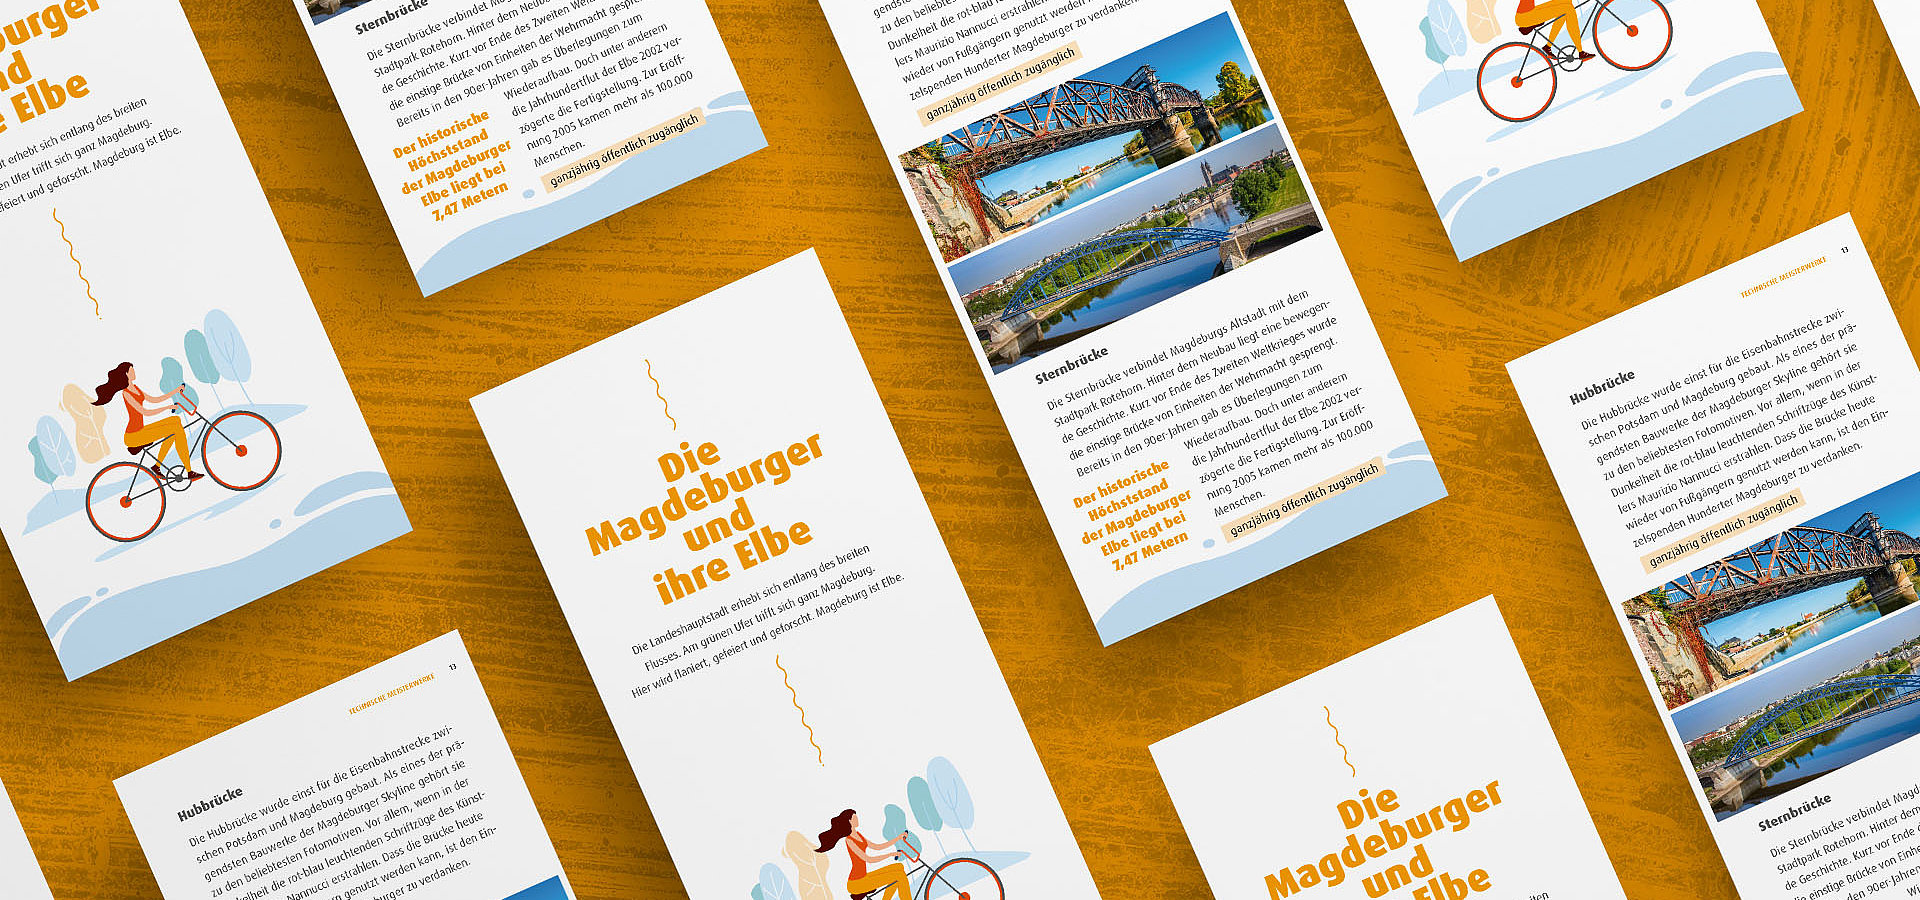 Broschüren: Broschüre für Magdeburg-Entdecker